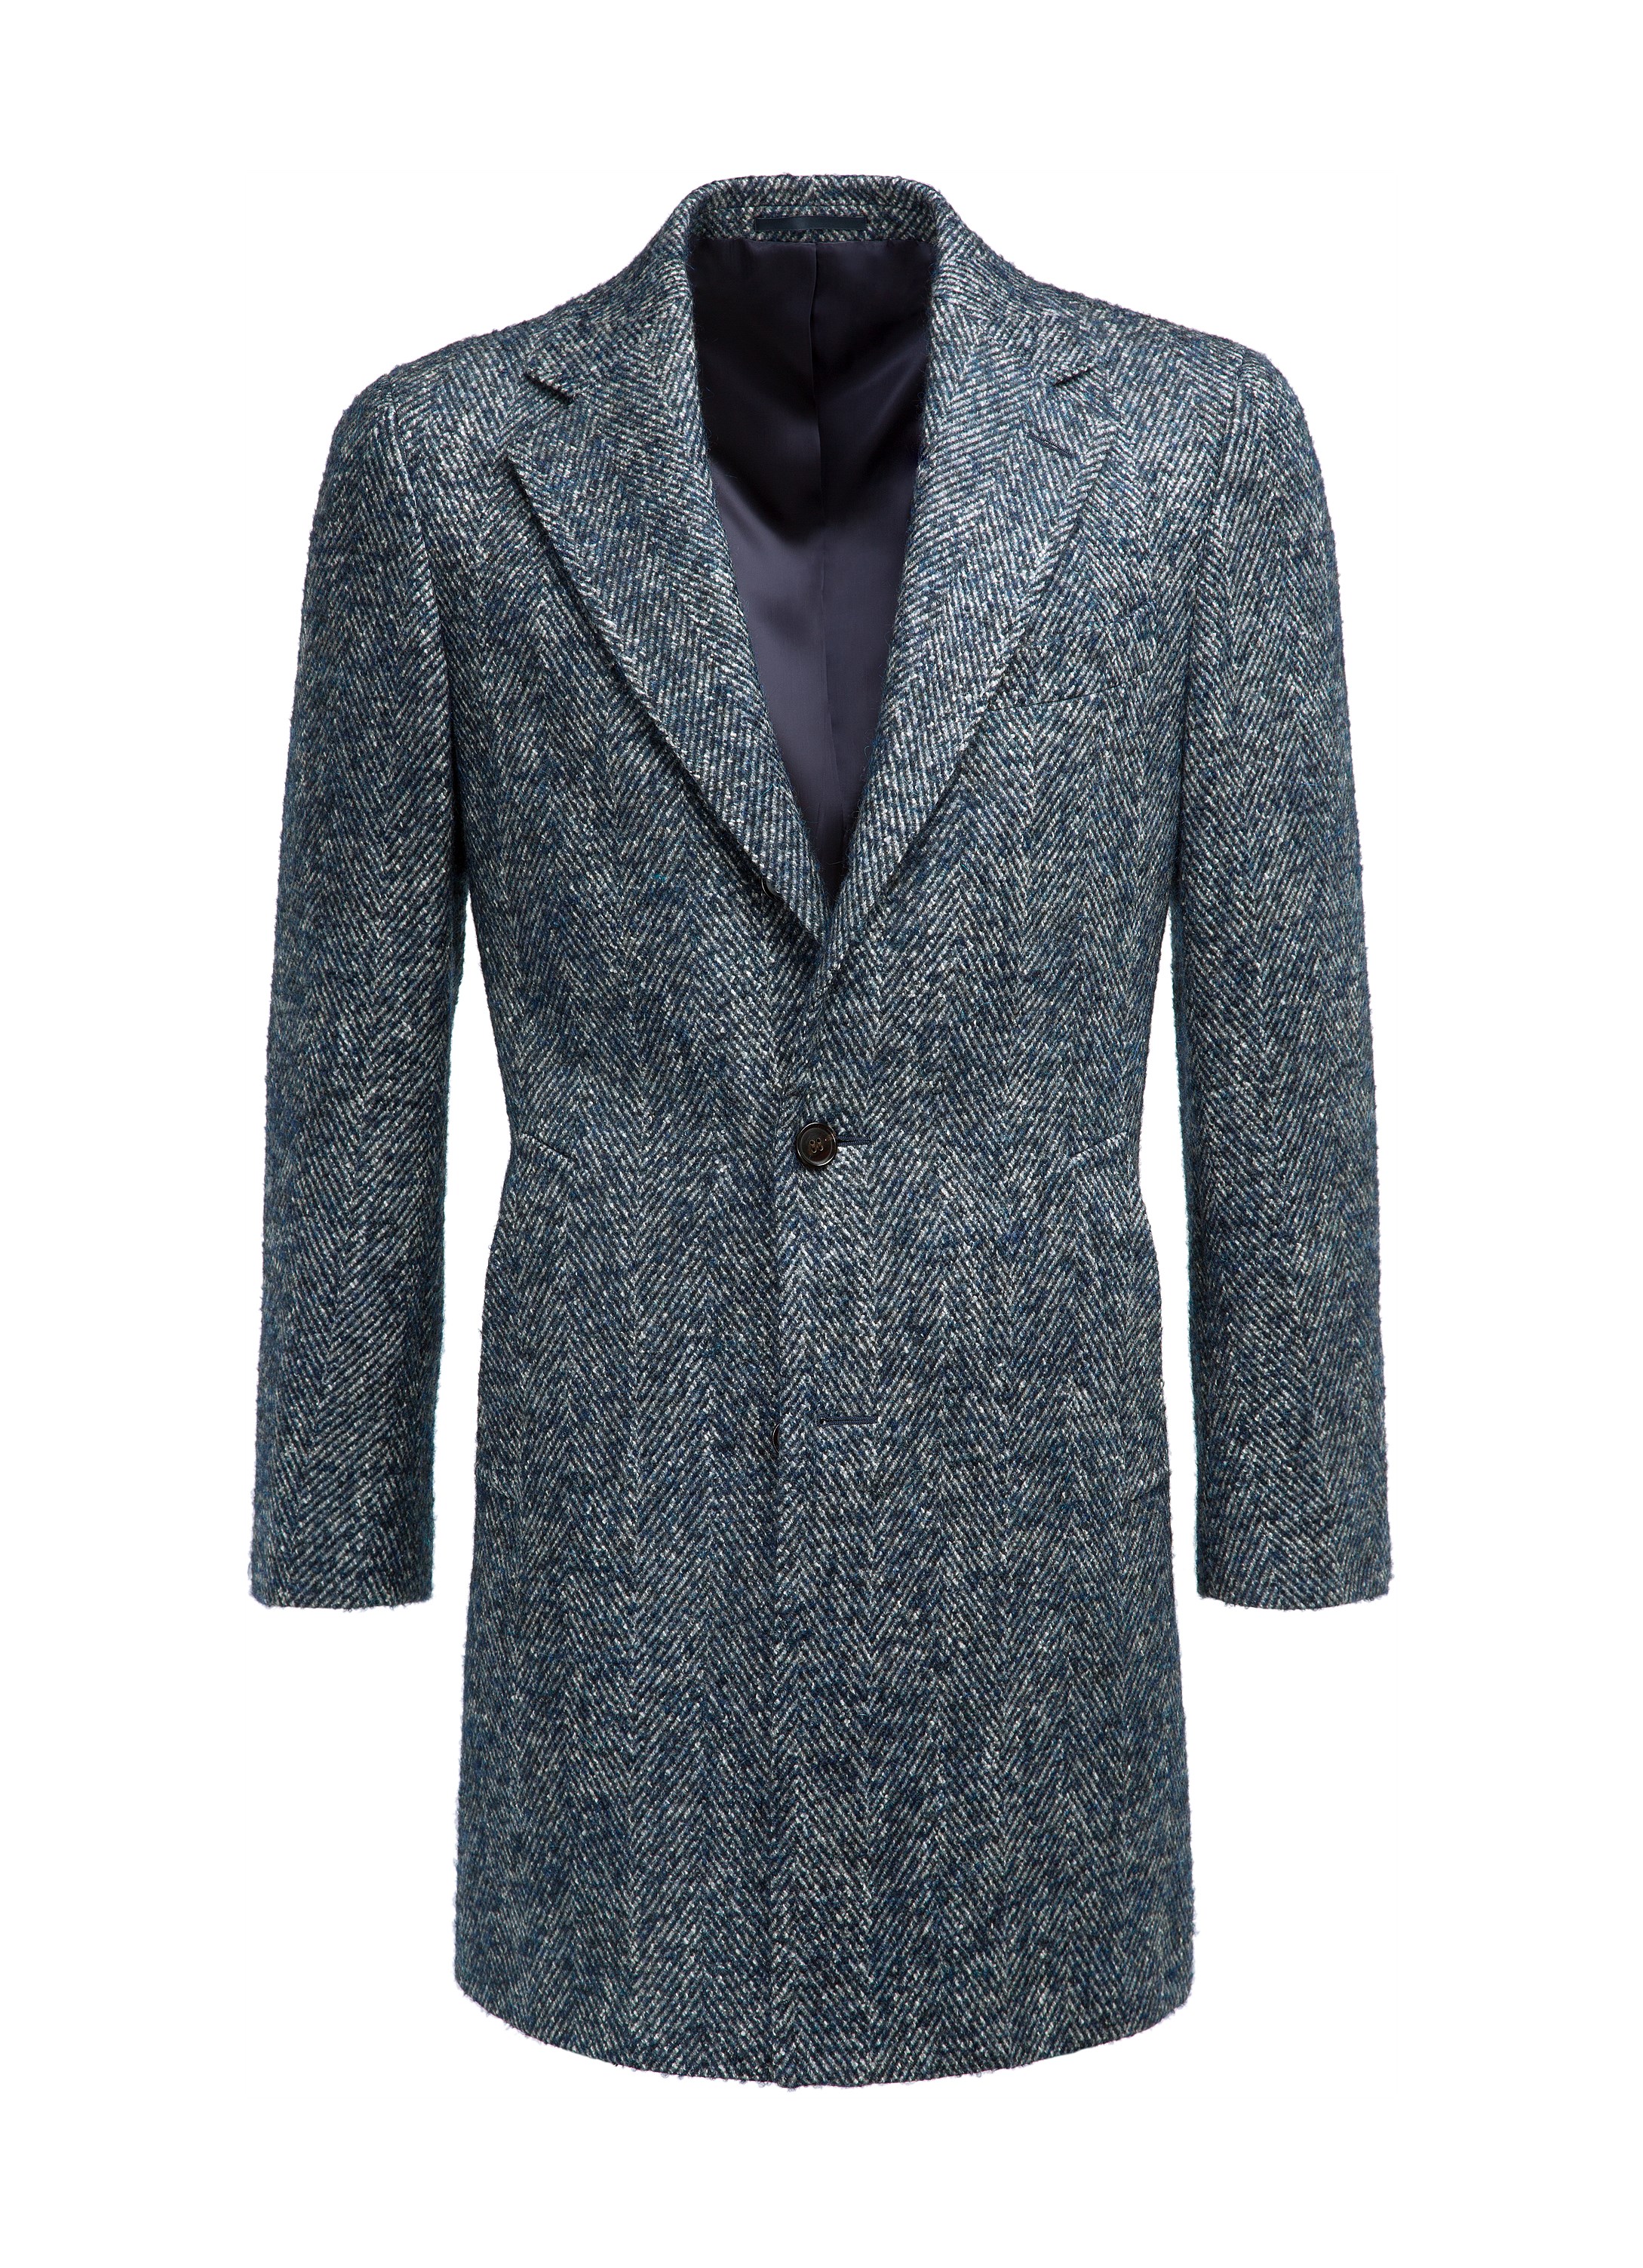 Blue Overcoat J466i | Suitsupply Online Store